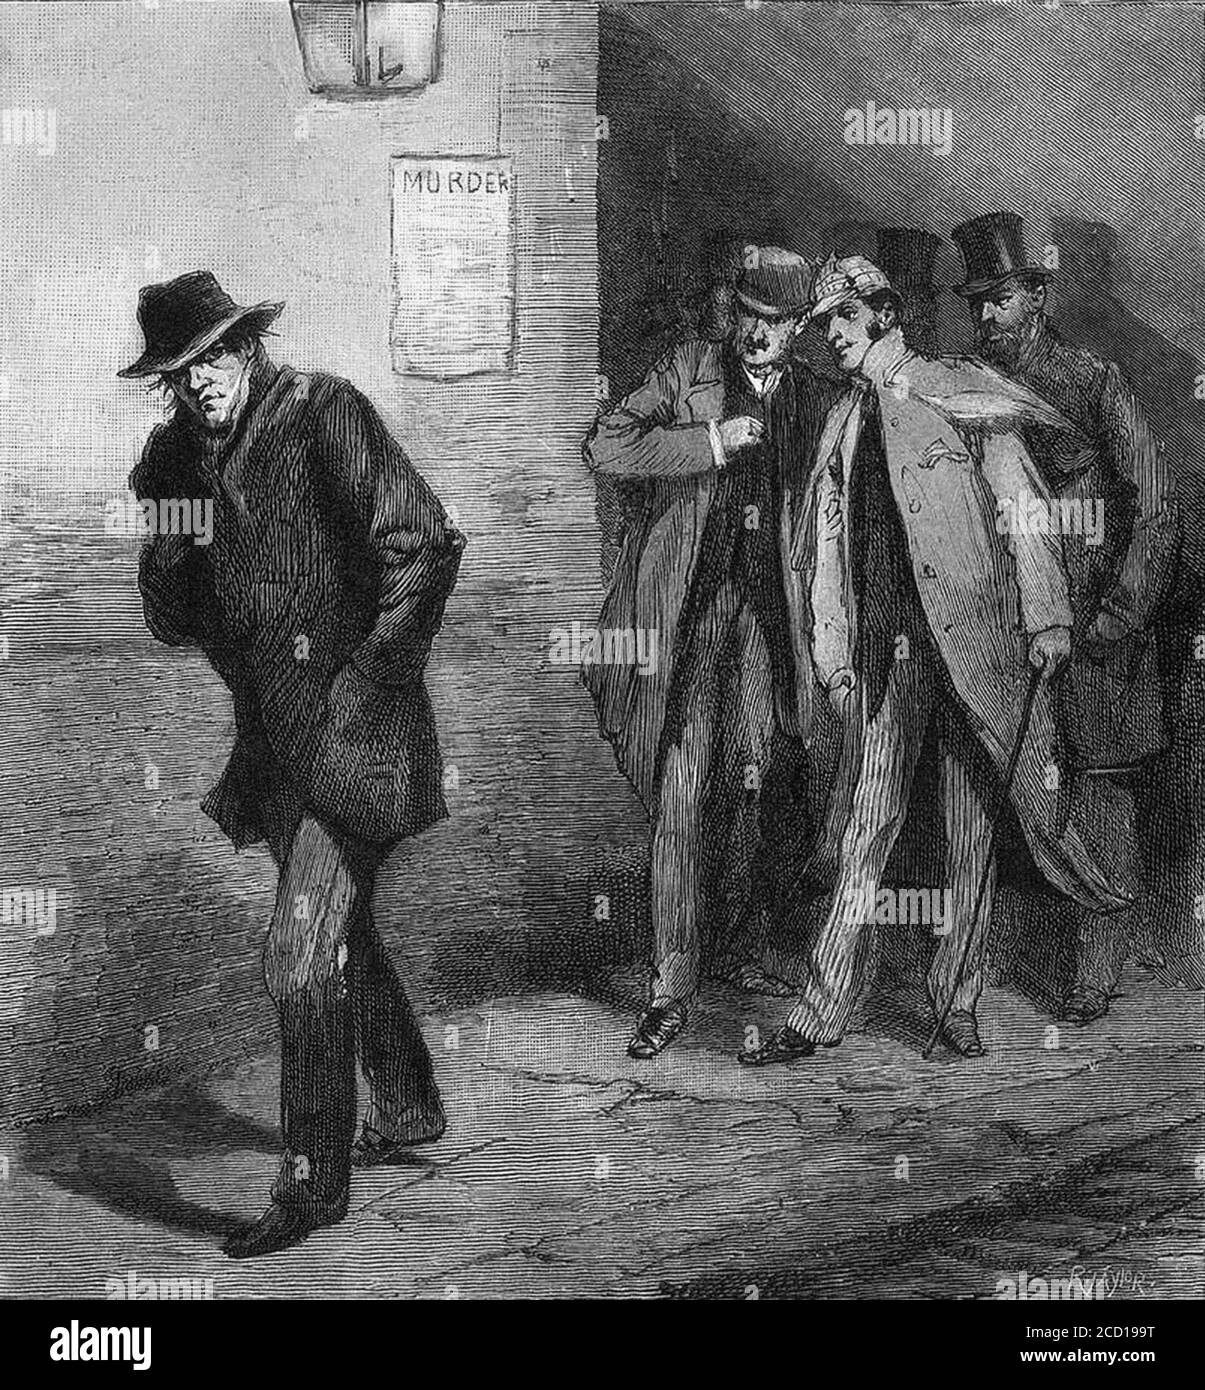 Sollevare il ripper. Illustrazione del Notiziario illustrato di Londra nell'ottobre 1888 con il titolo "con il Comitato di vigilanza nell'estremità orientale - UN carattere sospetto". Foto Stock